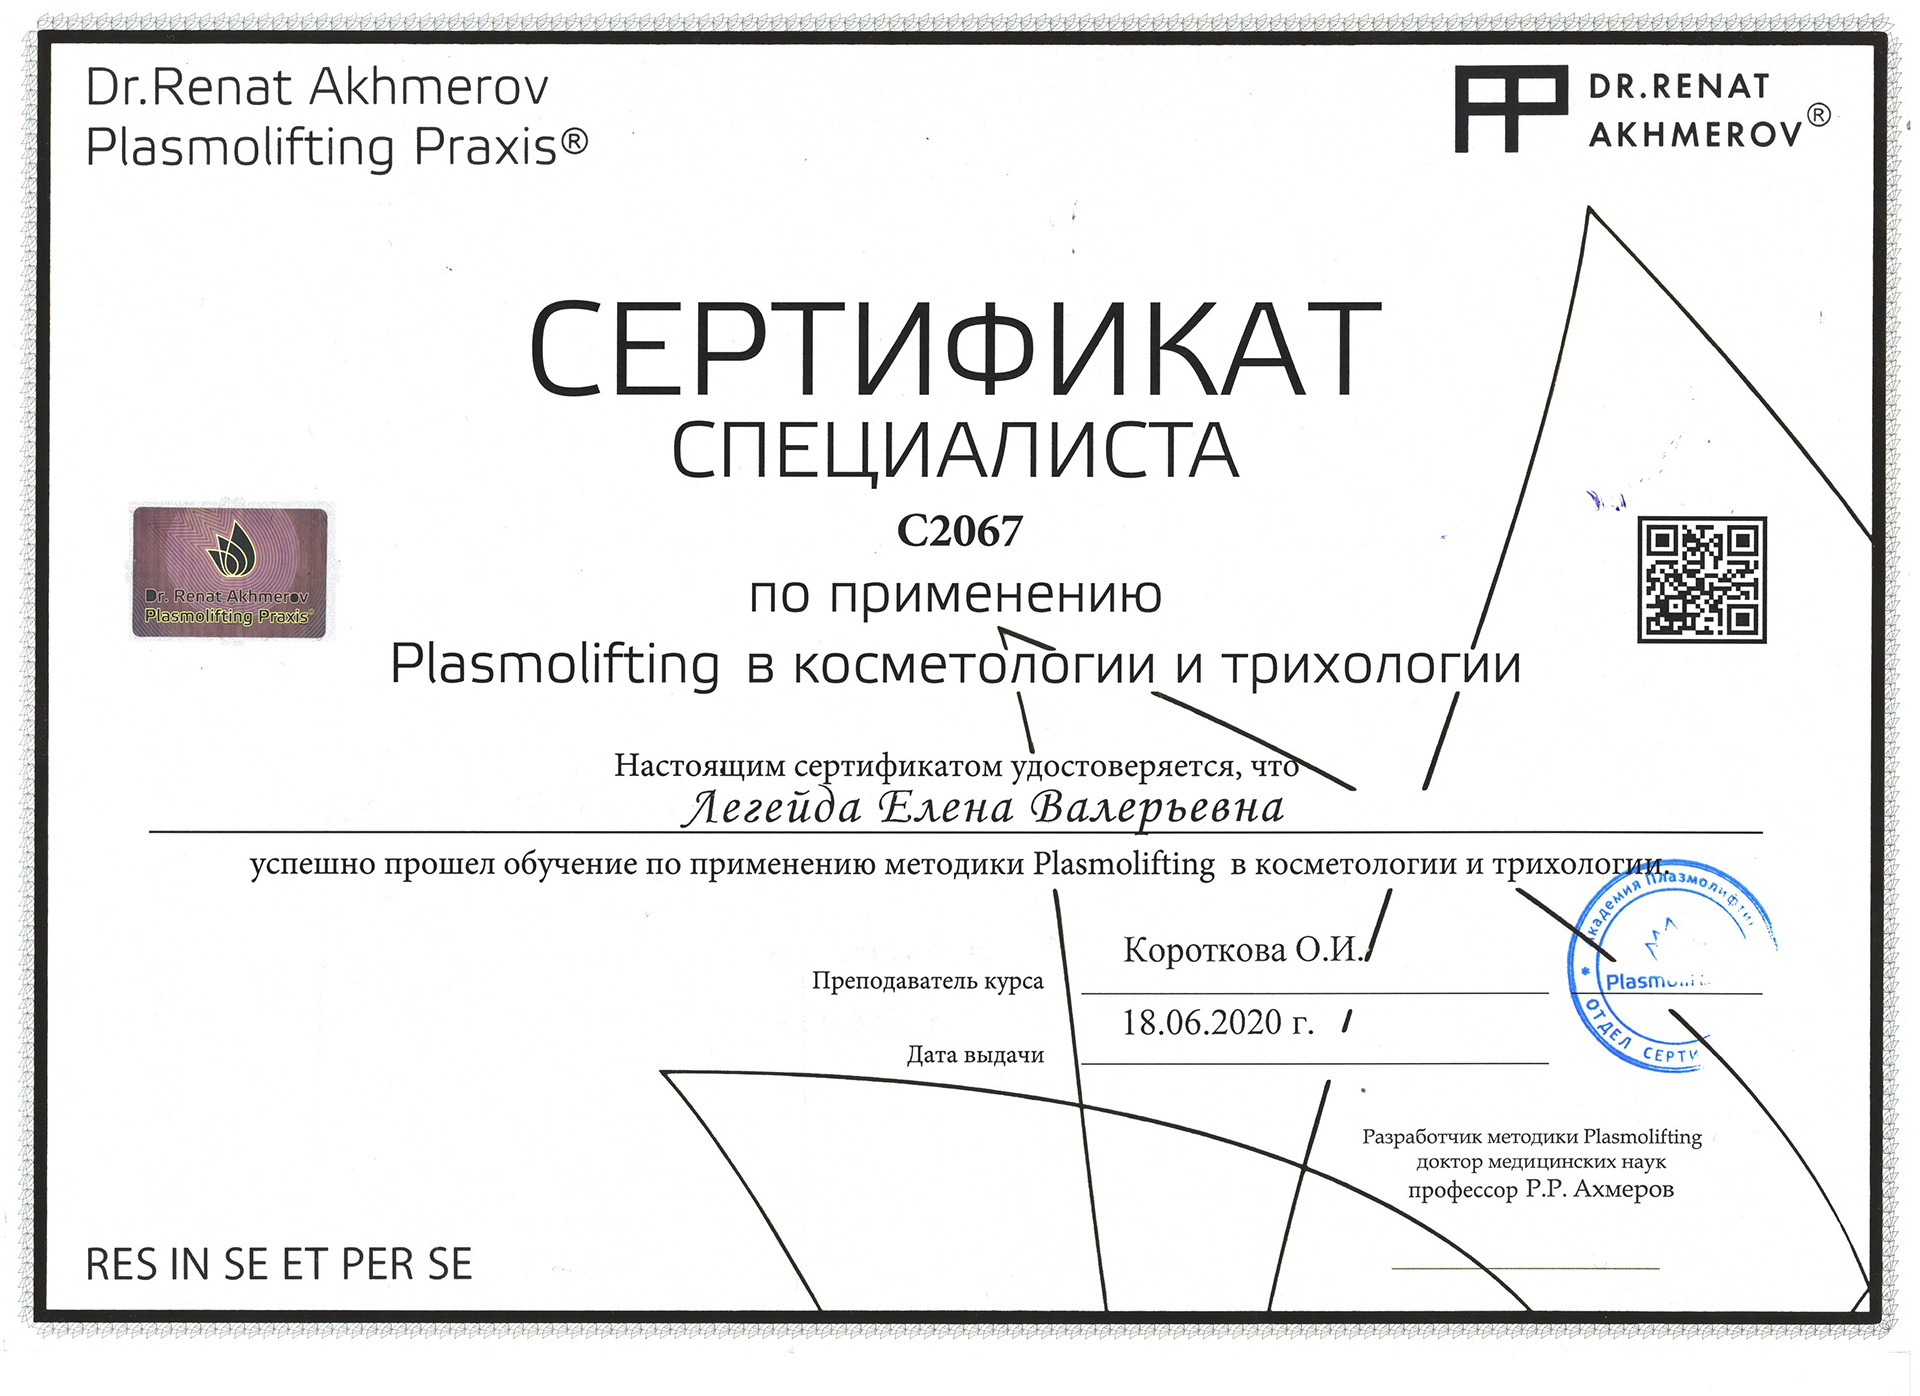 Сертификат — Применение Plasmolifting. Легейда Елена Валерьевна